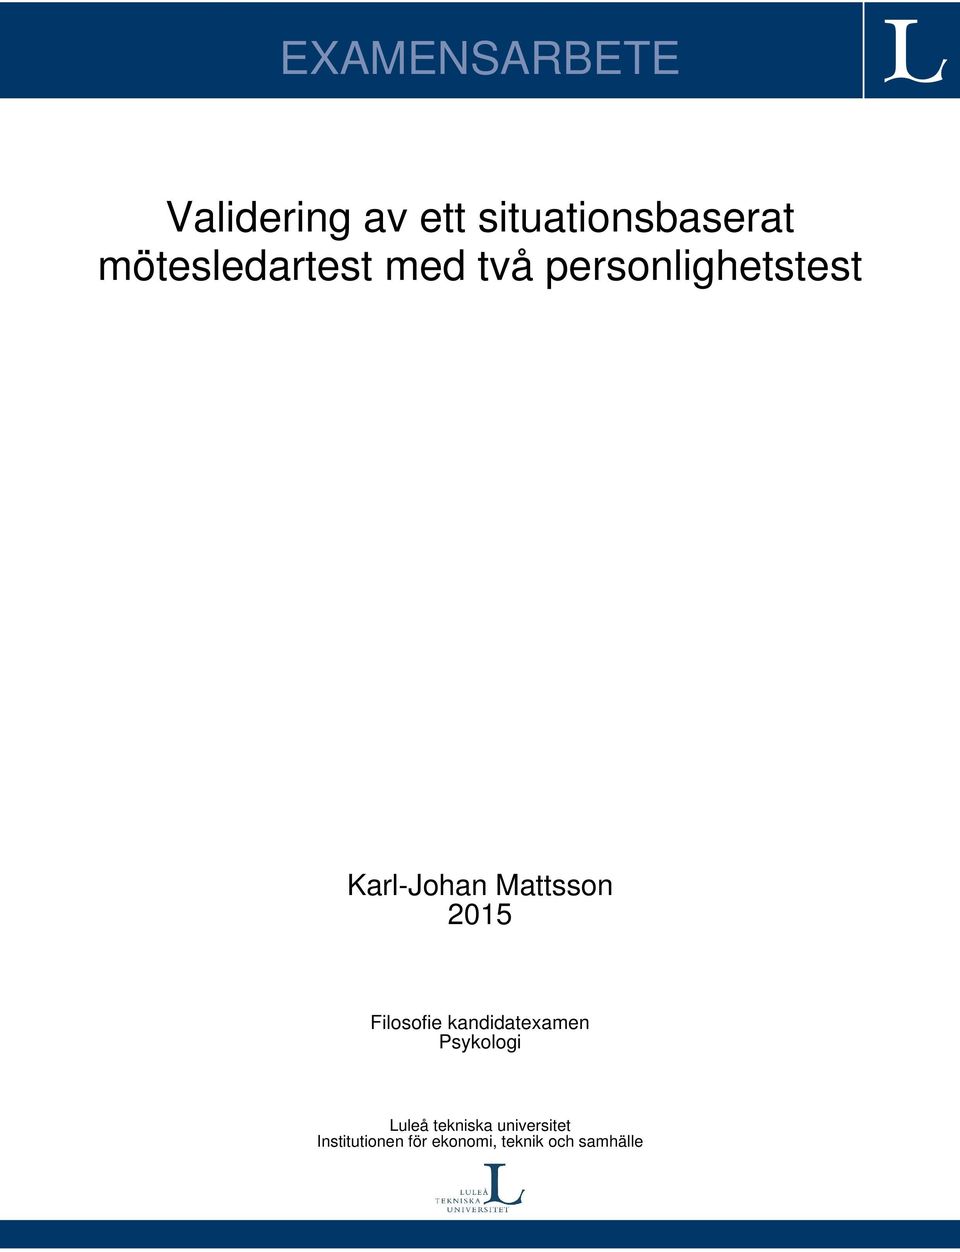 Mattsson 2015 Filosofie kandidatexamen Psykologi Luleå